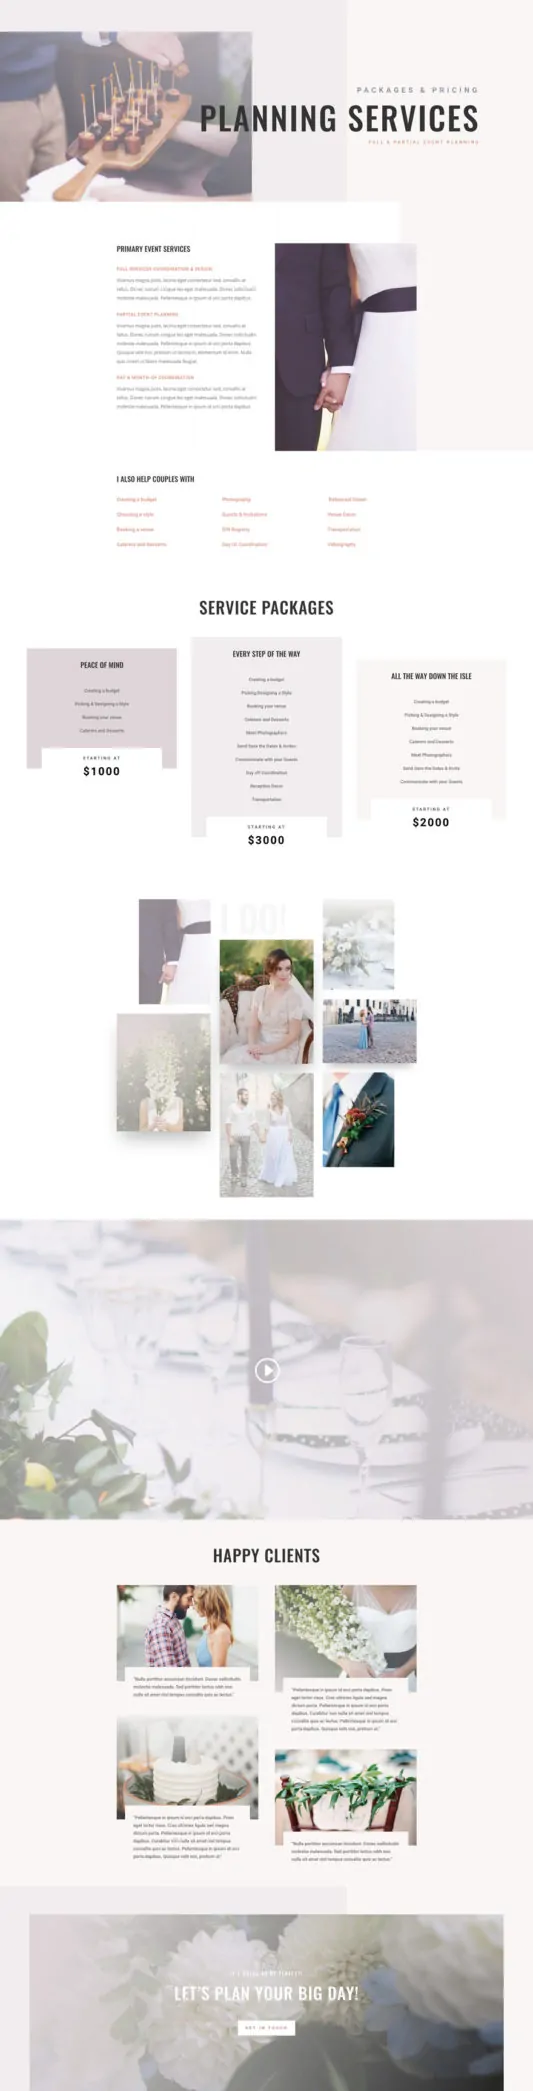 Wedding Planner Web Design 7